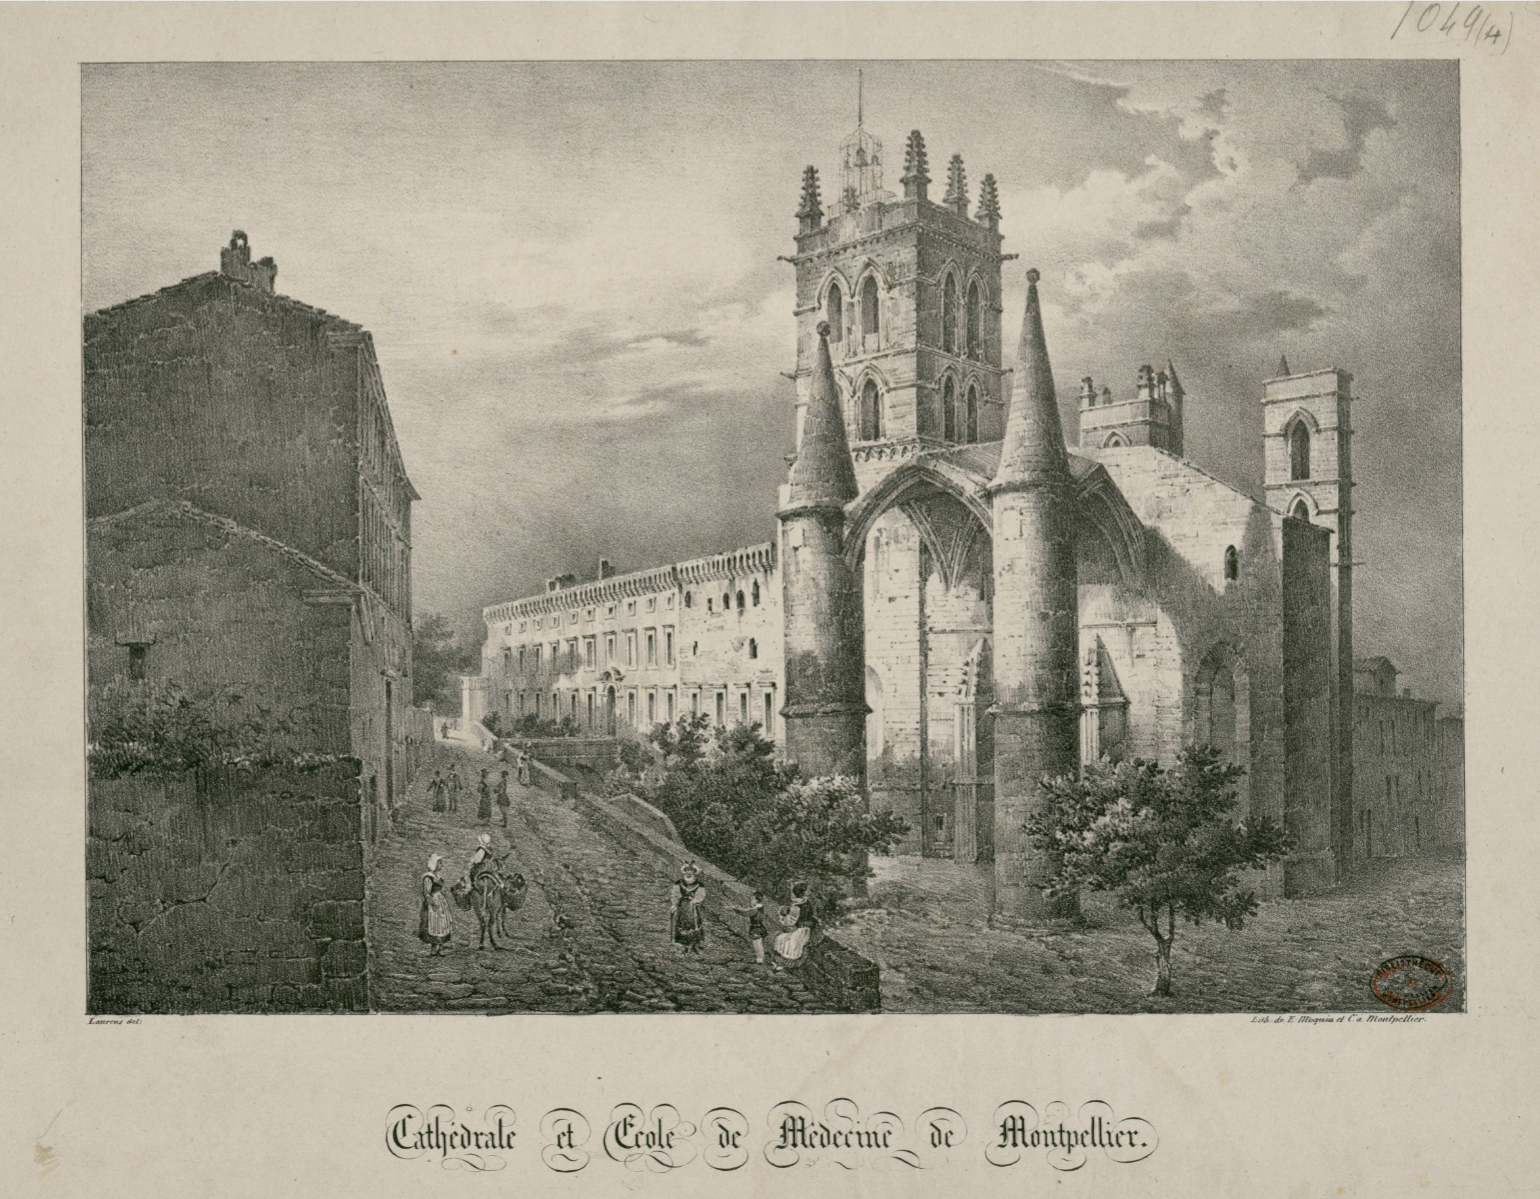 Cathédrale et école de médecine de Montpellier